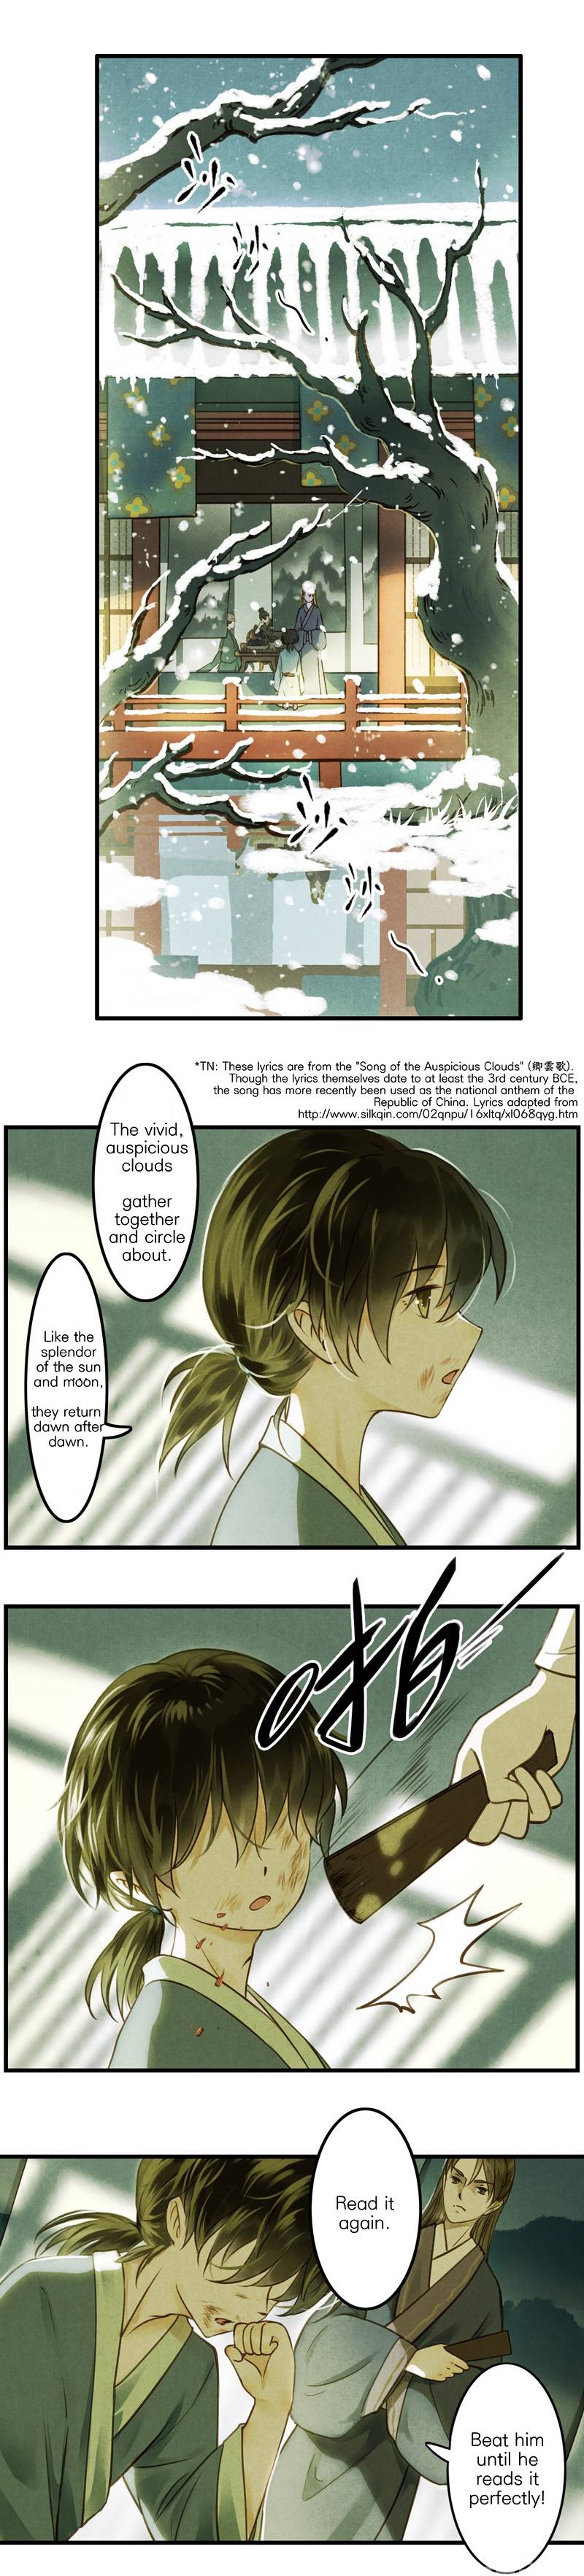 Umbrella Girl Dreams - Page 2